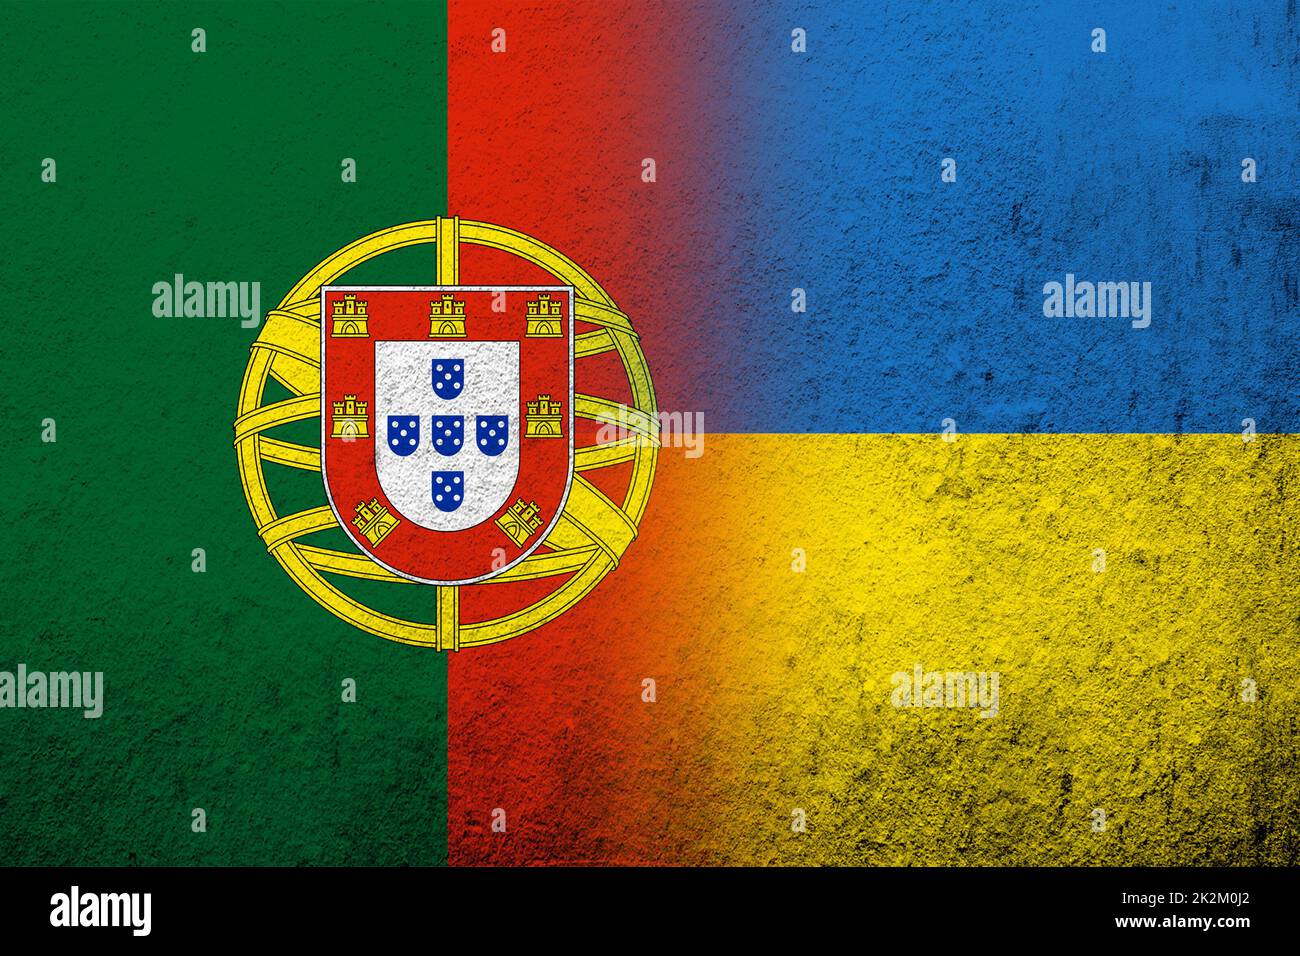 La République portugaise Portugal drapeau national avec drapeau national de l'Ukraine. Grunge l'arrière-plan Banque D'Images